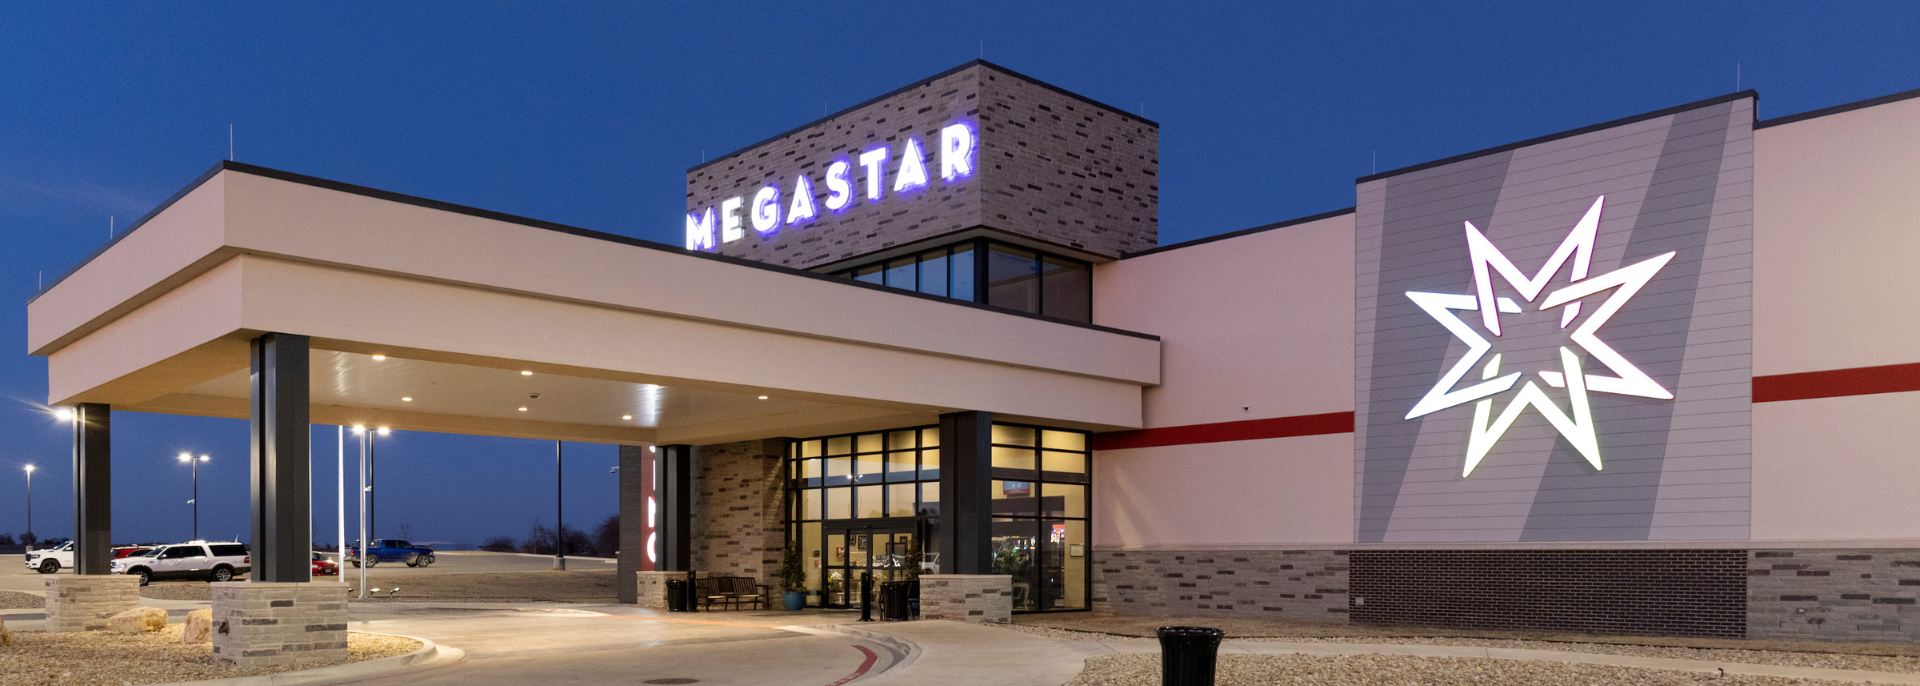 Rewards - Megastar Casino